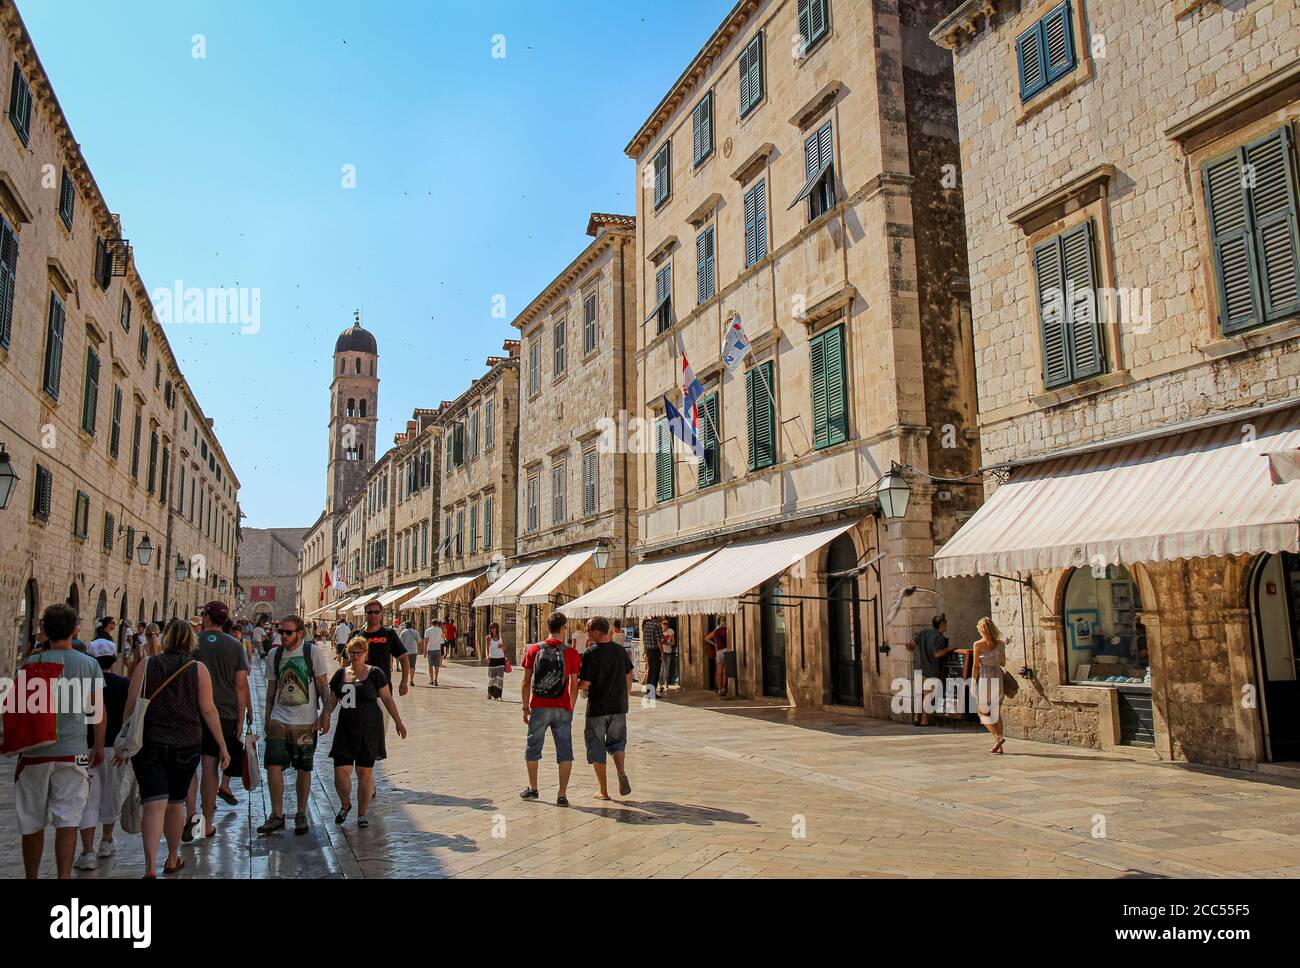 Dubrovnik, Croatie - 15 juillet 2018 : la rue principale de Stradun et les magasins de la vieille ville de Dubrovnik en été, avec la Tour de l'horloge de Zvonik, Croatie Banque D'Images